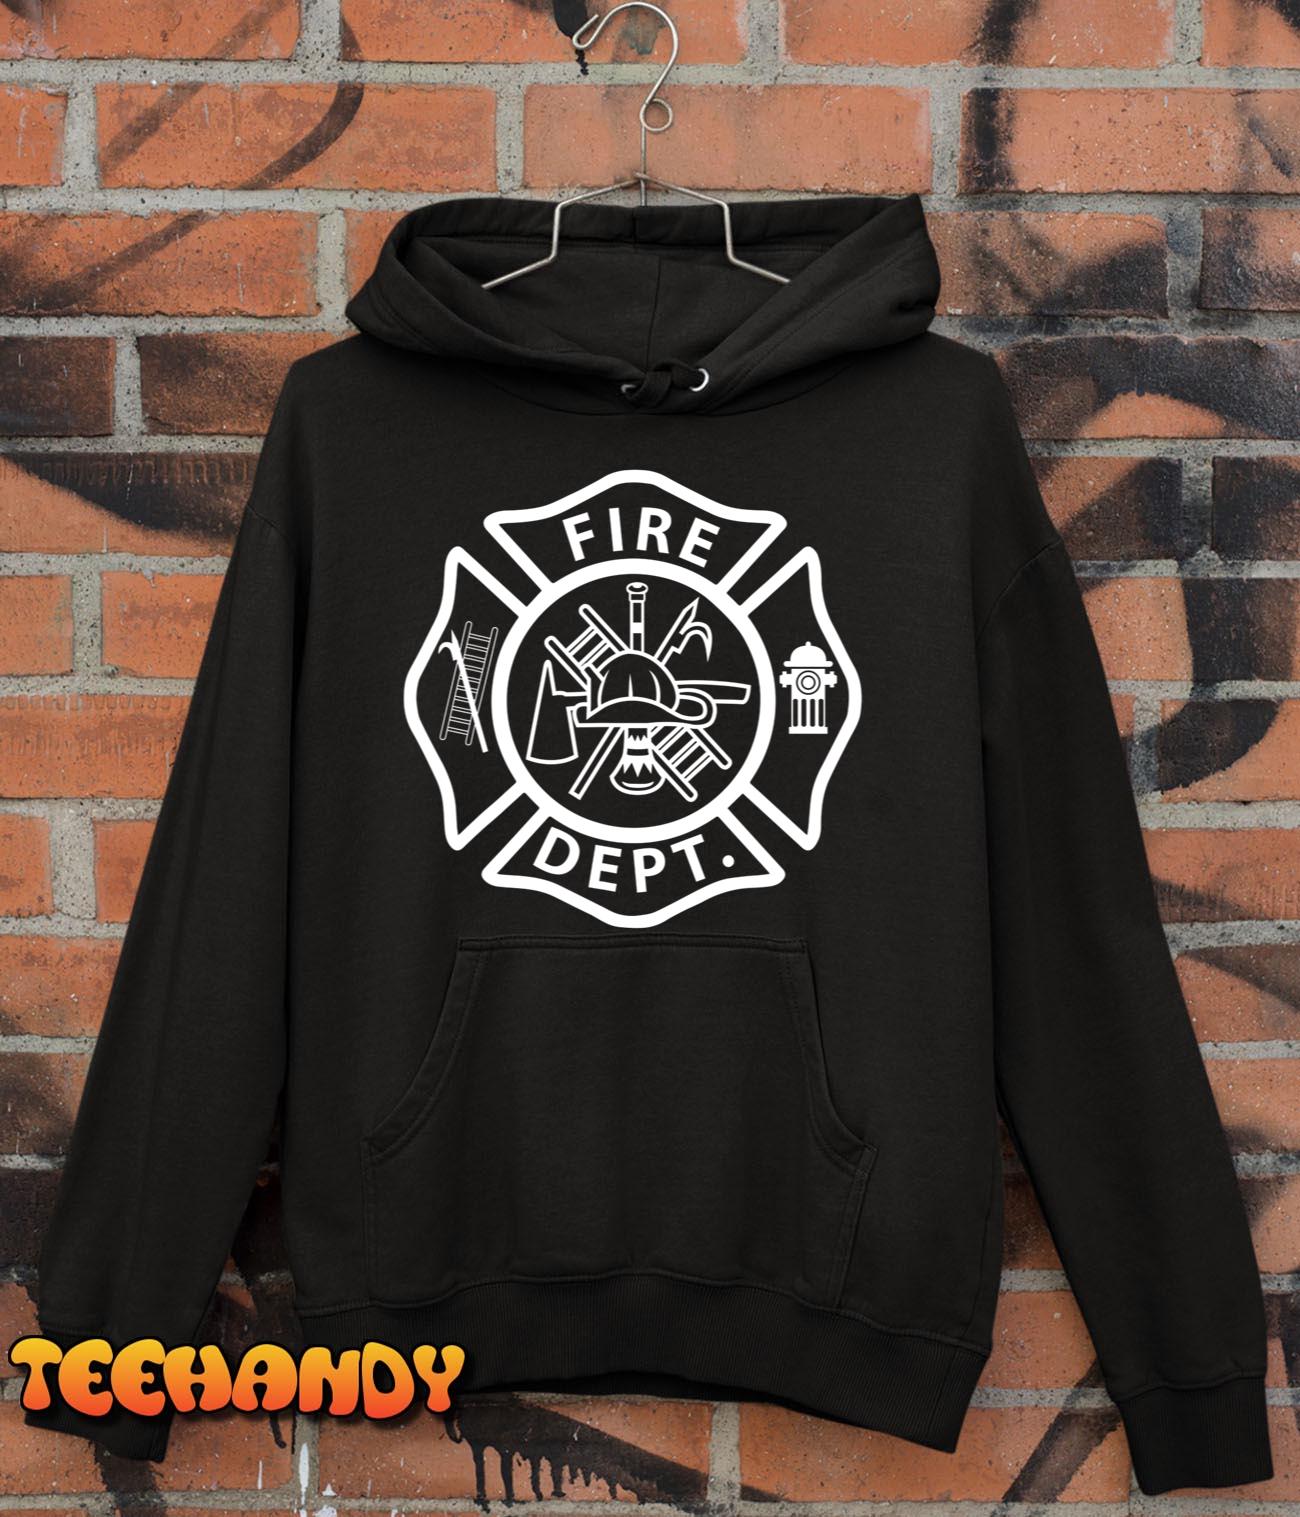 Fire Department Logo Uniform Fireman Symbol Firefighter Gear T-Shirt